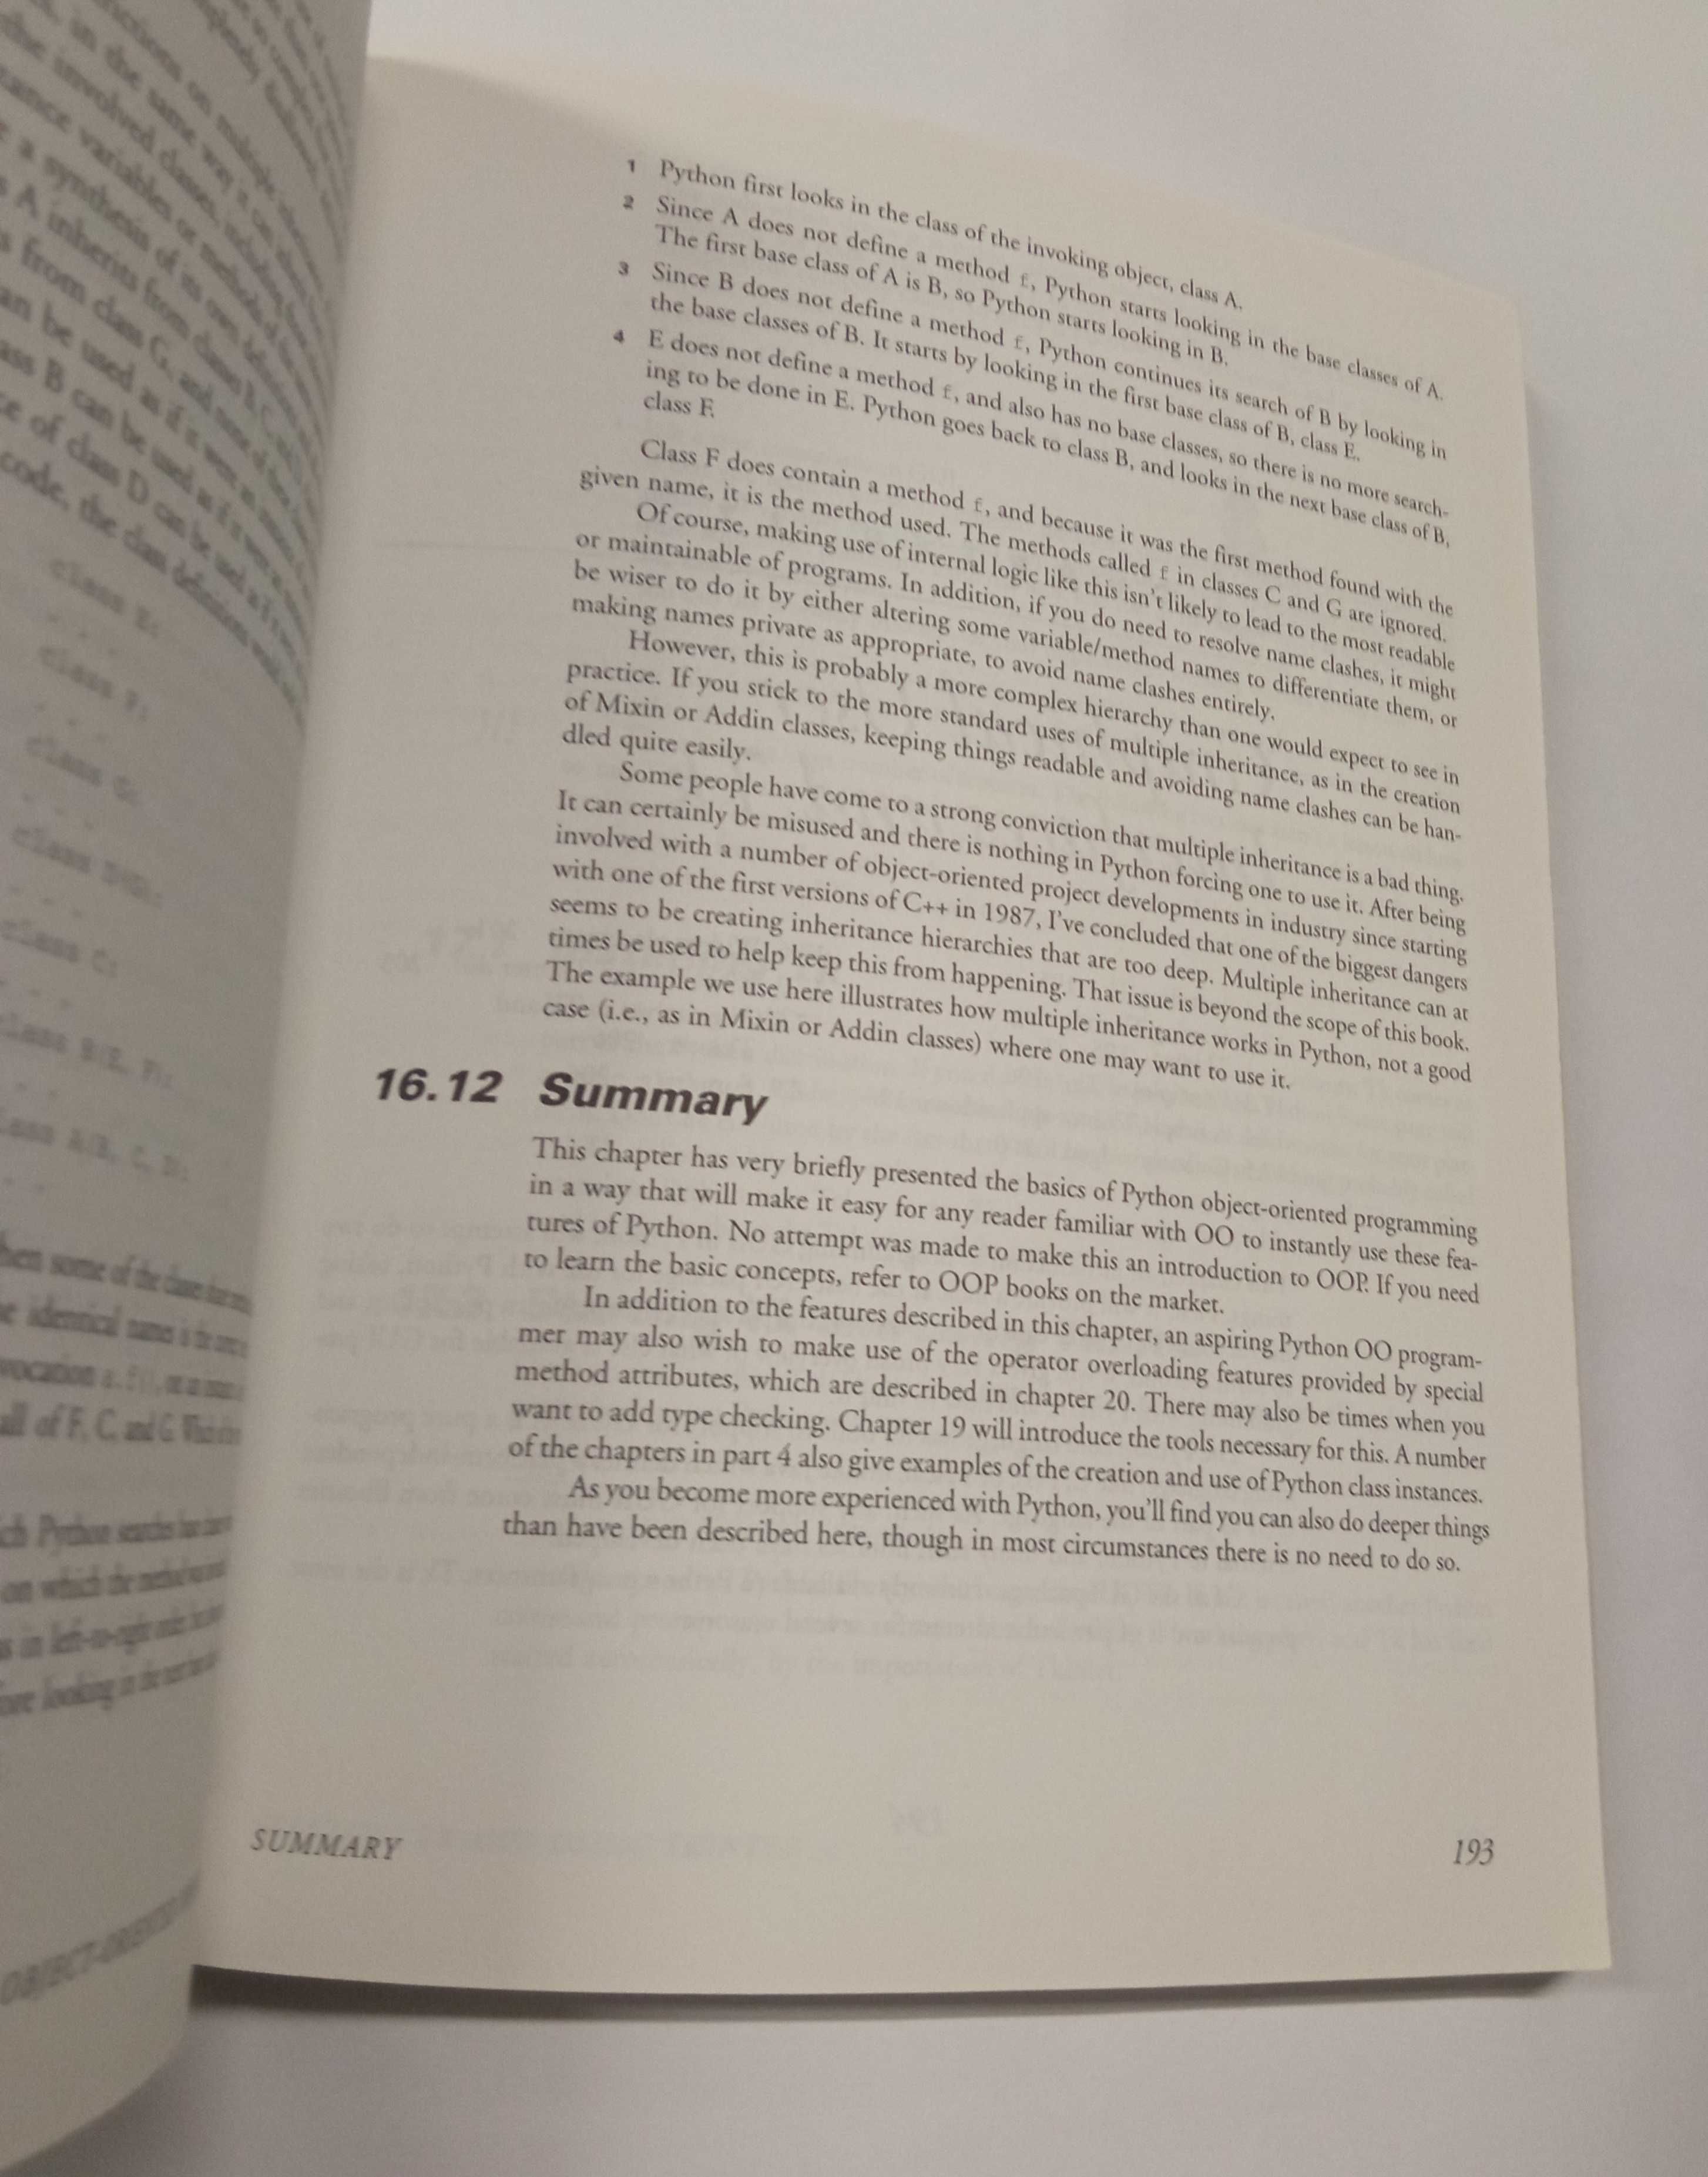 The Quick Python Book, de Daryl Harms